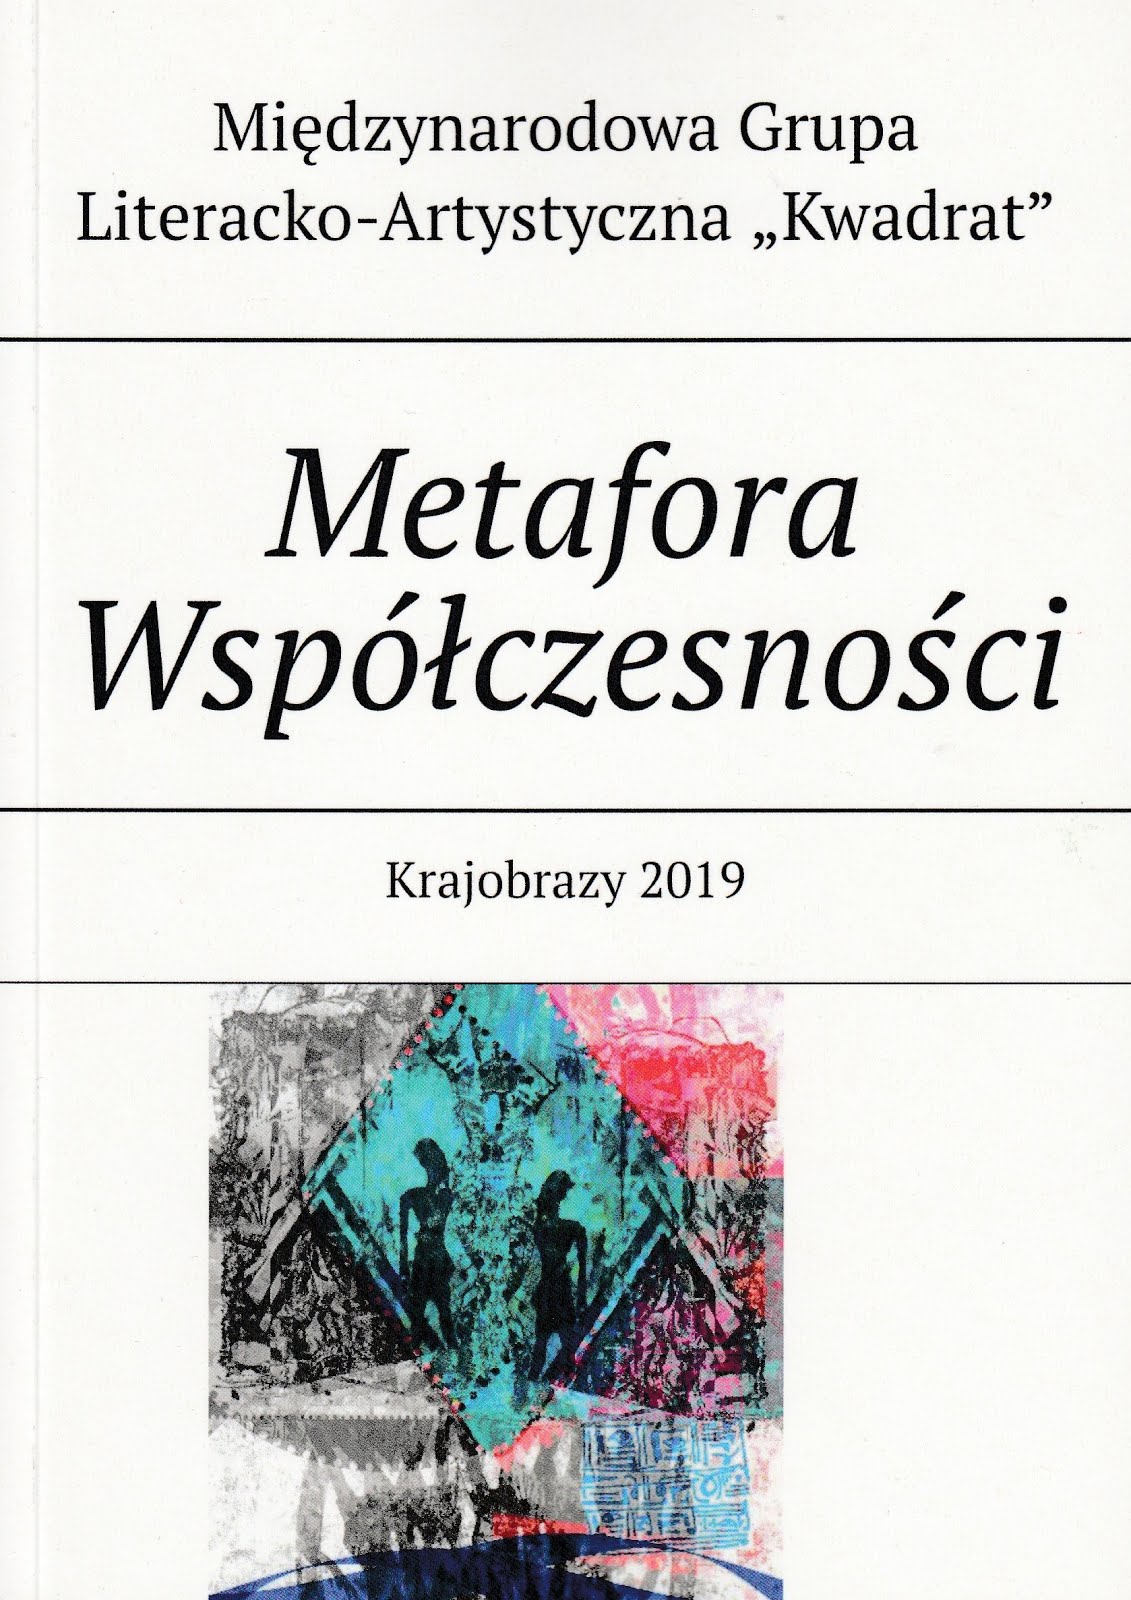 "METAFORA WSPÓŁCZESNOŚCI - KRAJOBRAZY 2019"